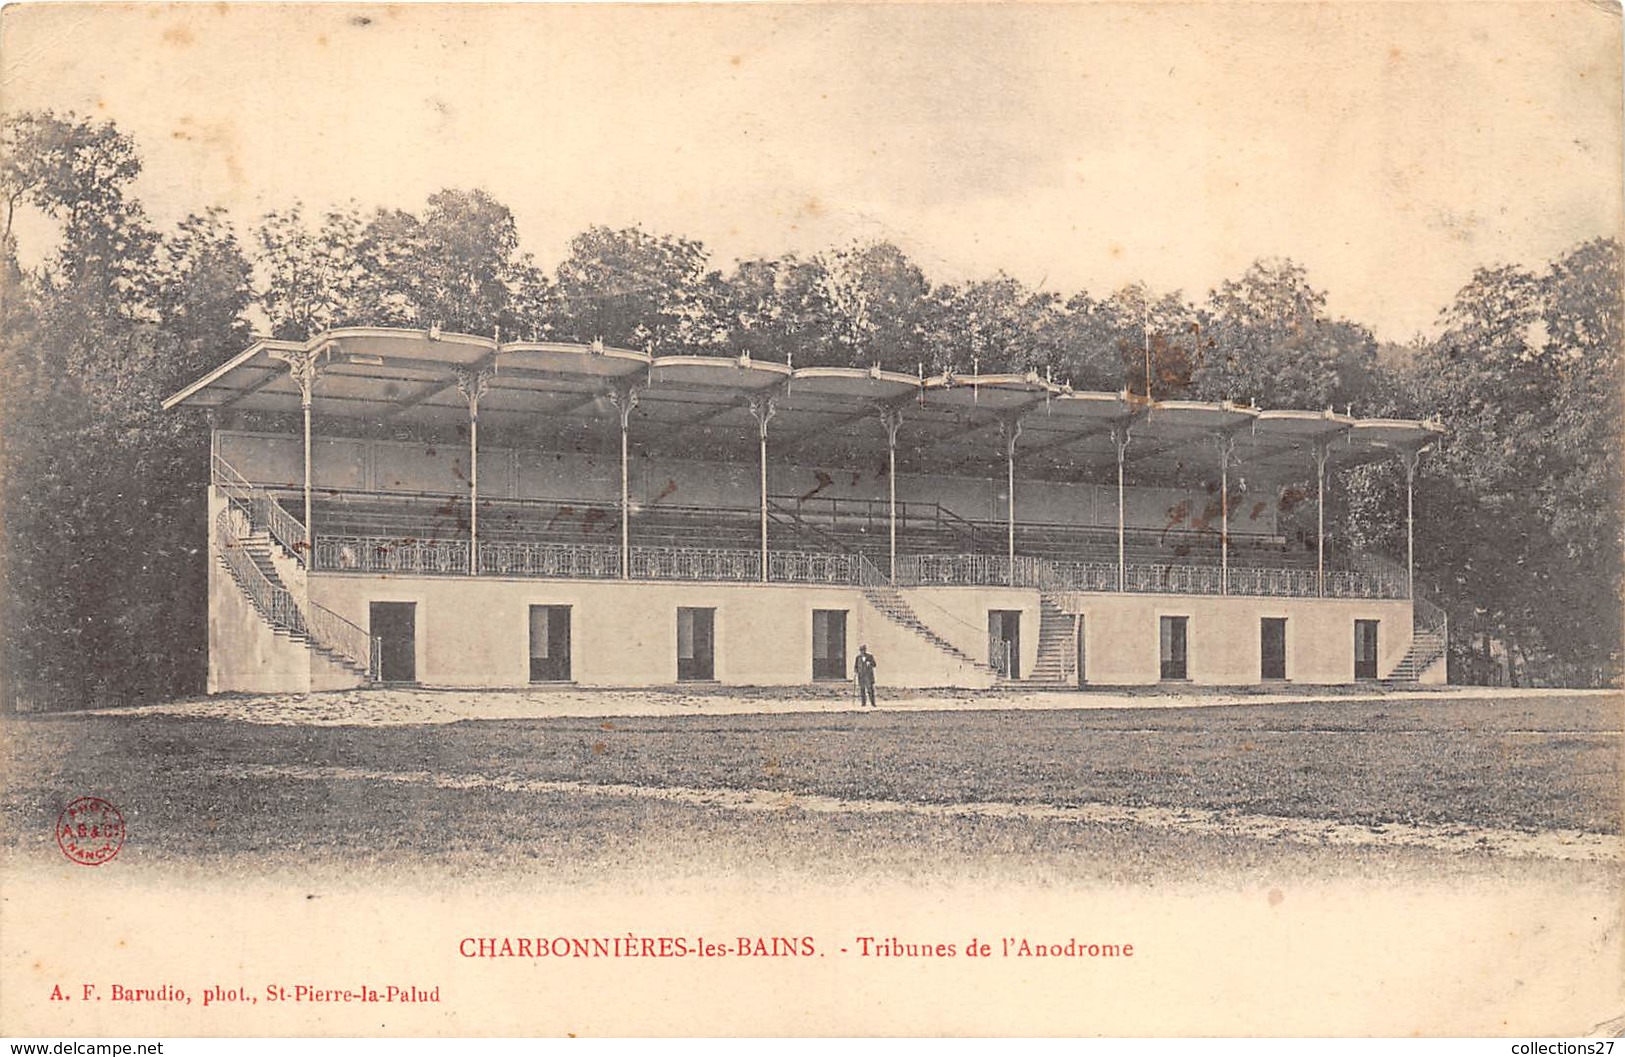 69-CHARBONNIERES-LES-BAINS-TRIBUNES DE L'ANODROME - Charbonniere Les Bains